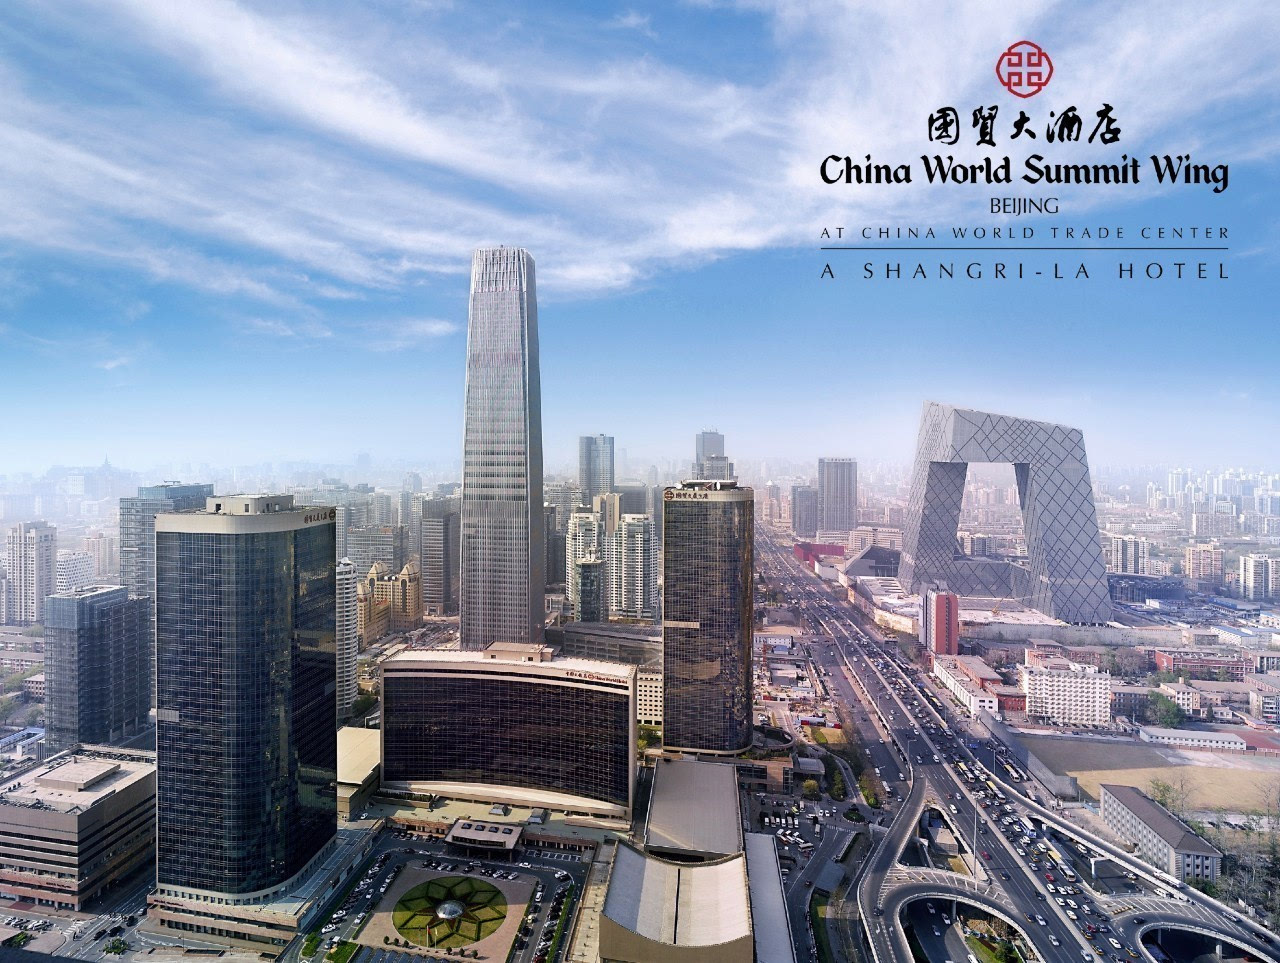 的北京国贸大酒店坐落在京城        ——330米高的国贸大厦上层部分